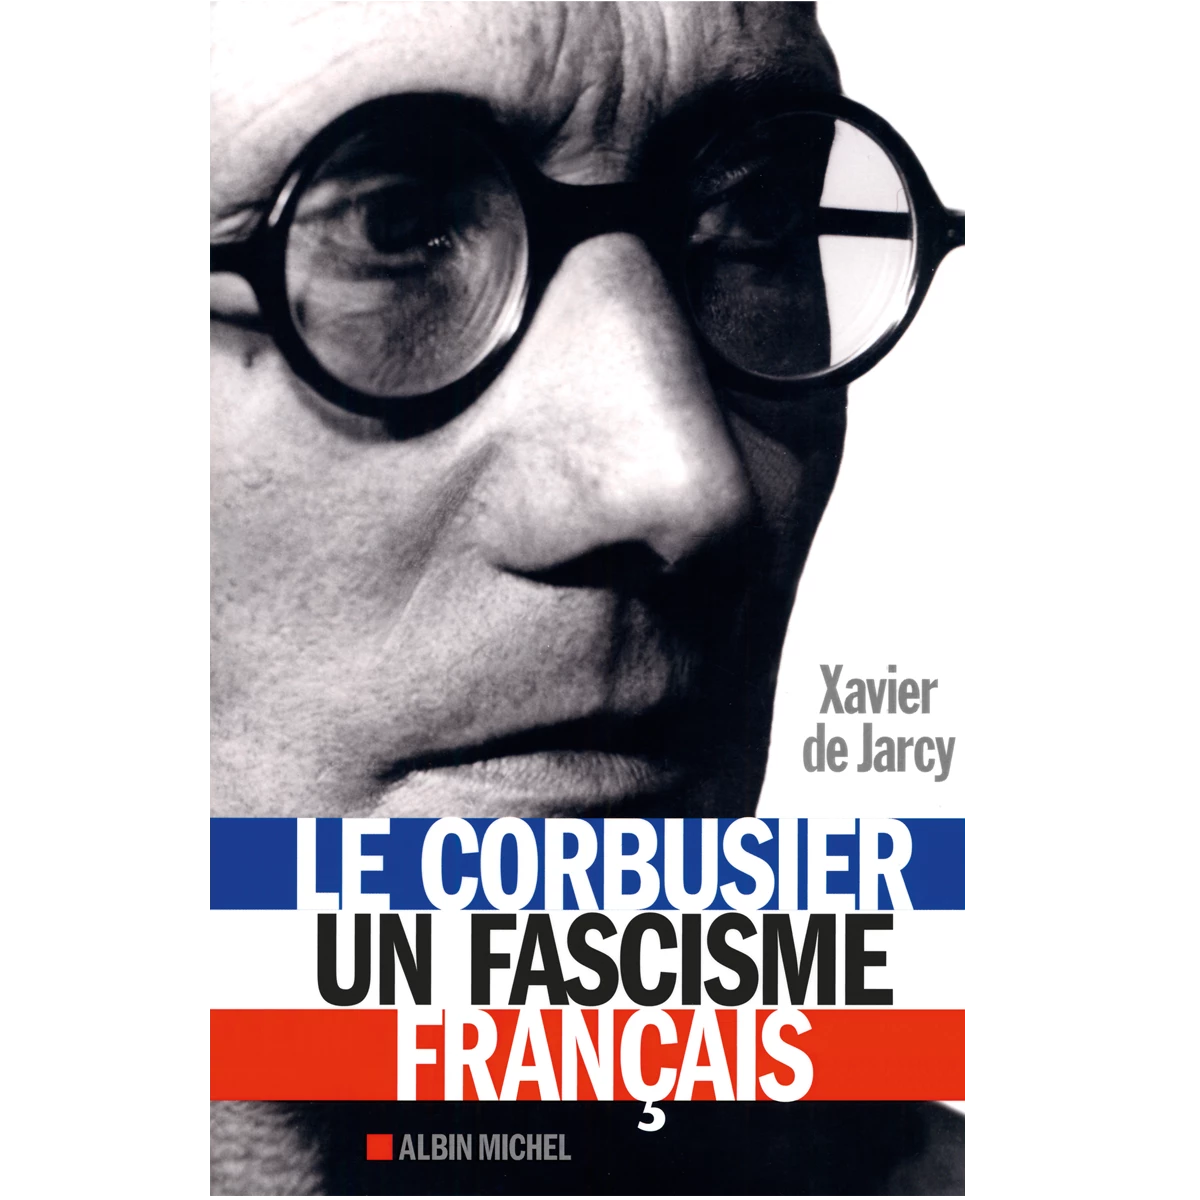 Le Corbusier, une fascisme français